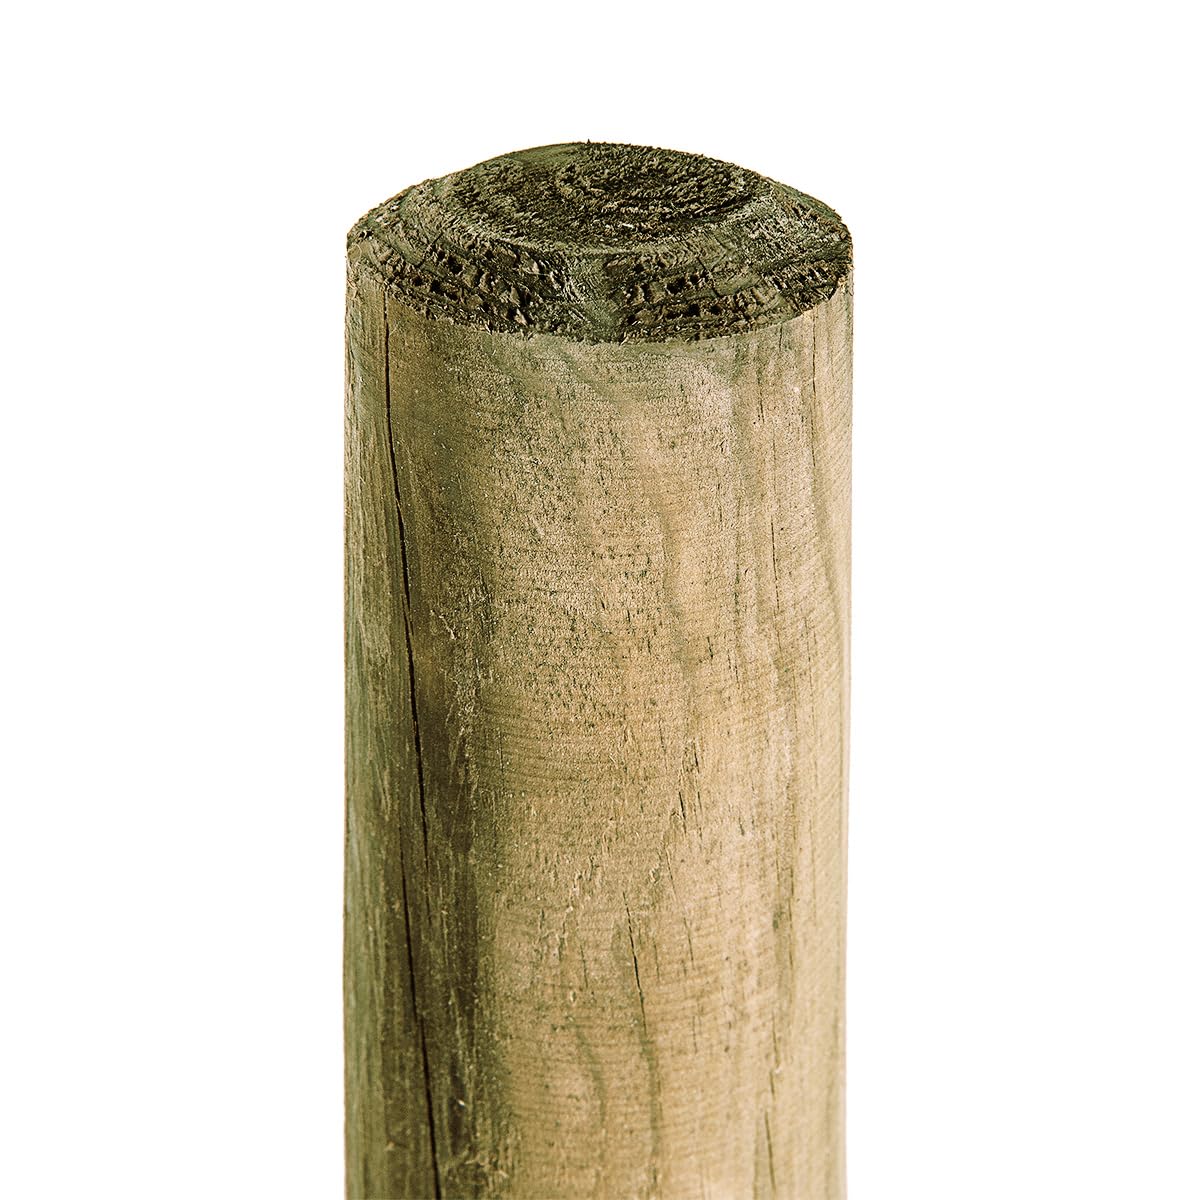 HaGa® Holzpfahl 5 STK. Ø5cm in 125cm Höhe | Kesseldruckimprägniert (grün), Witterungsbeständig – Perfekt für Garten, Landwirtschaft und Außenprojekte